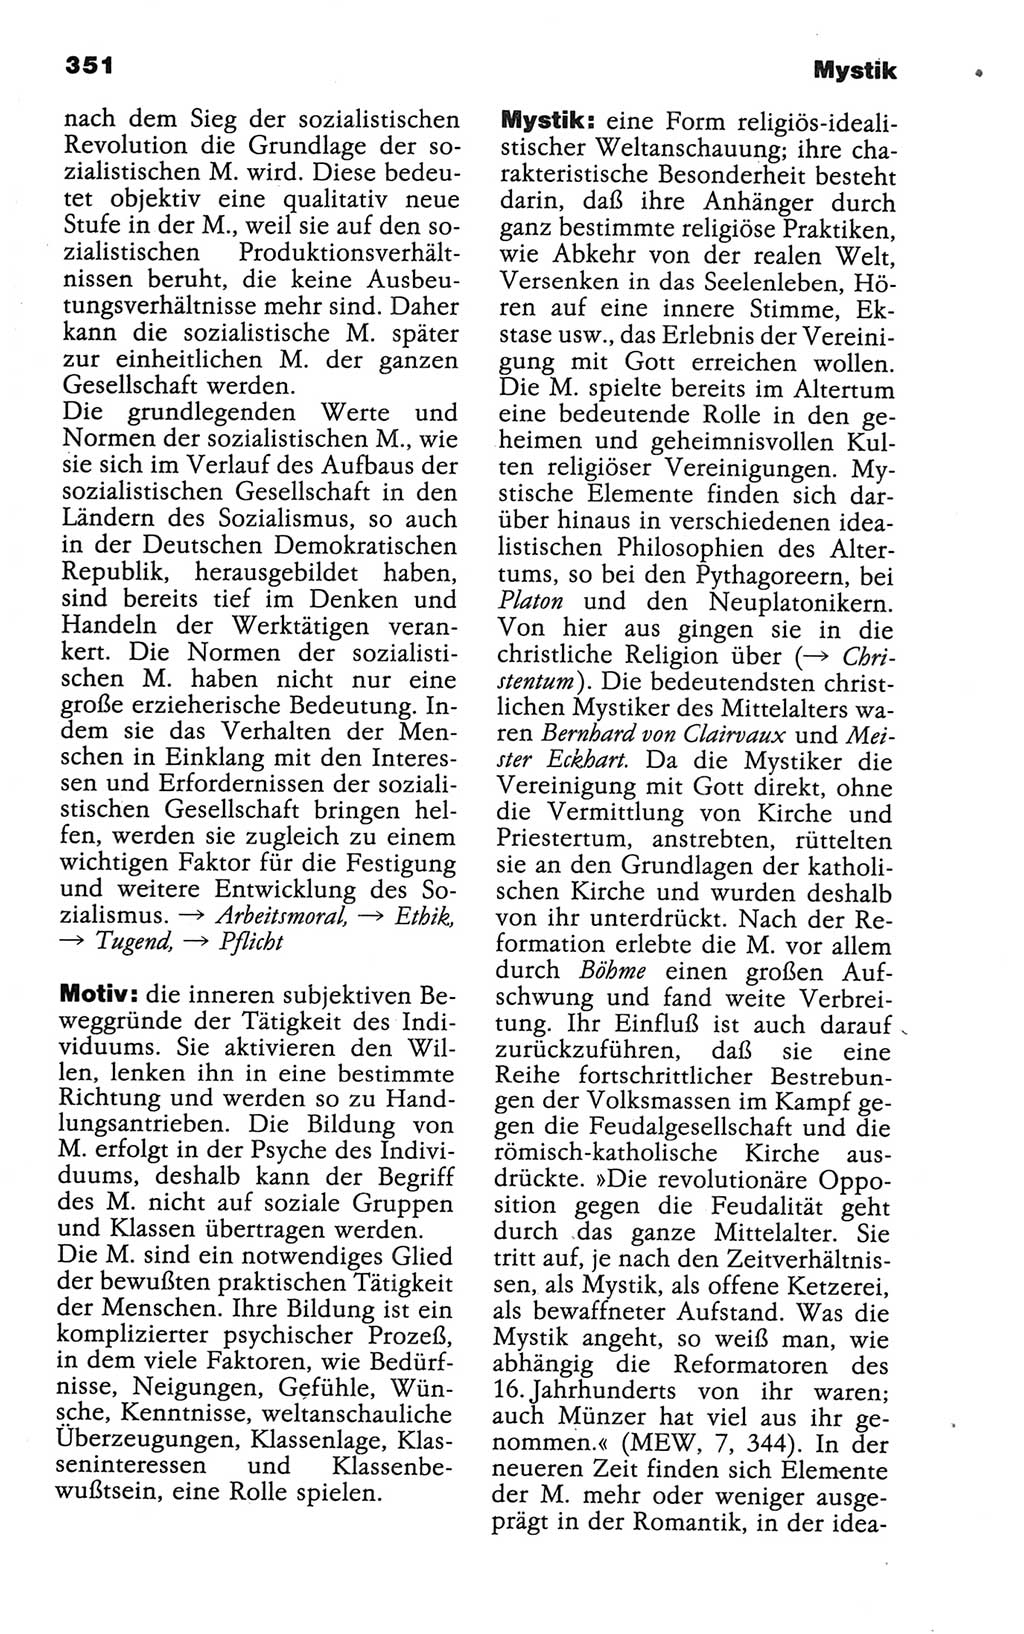 Wörterbuch der marxistisch-leninistischen Philosophie [Deutsche Demokratische Republik (DDR)] 1986, Seite 351 (Wb. ML Phil. DDR 1986, S. 351)